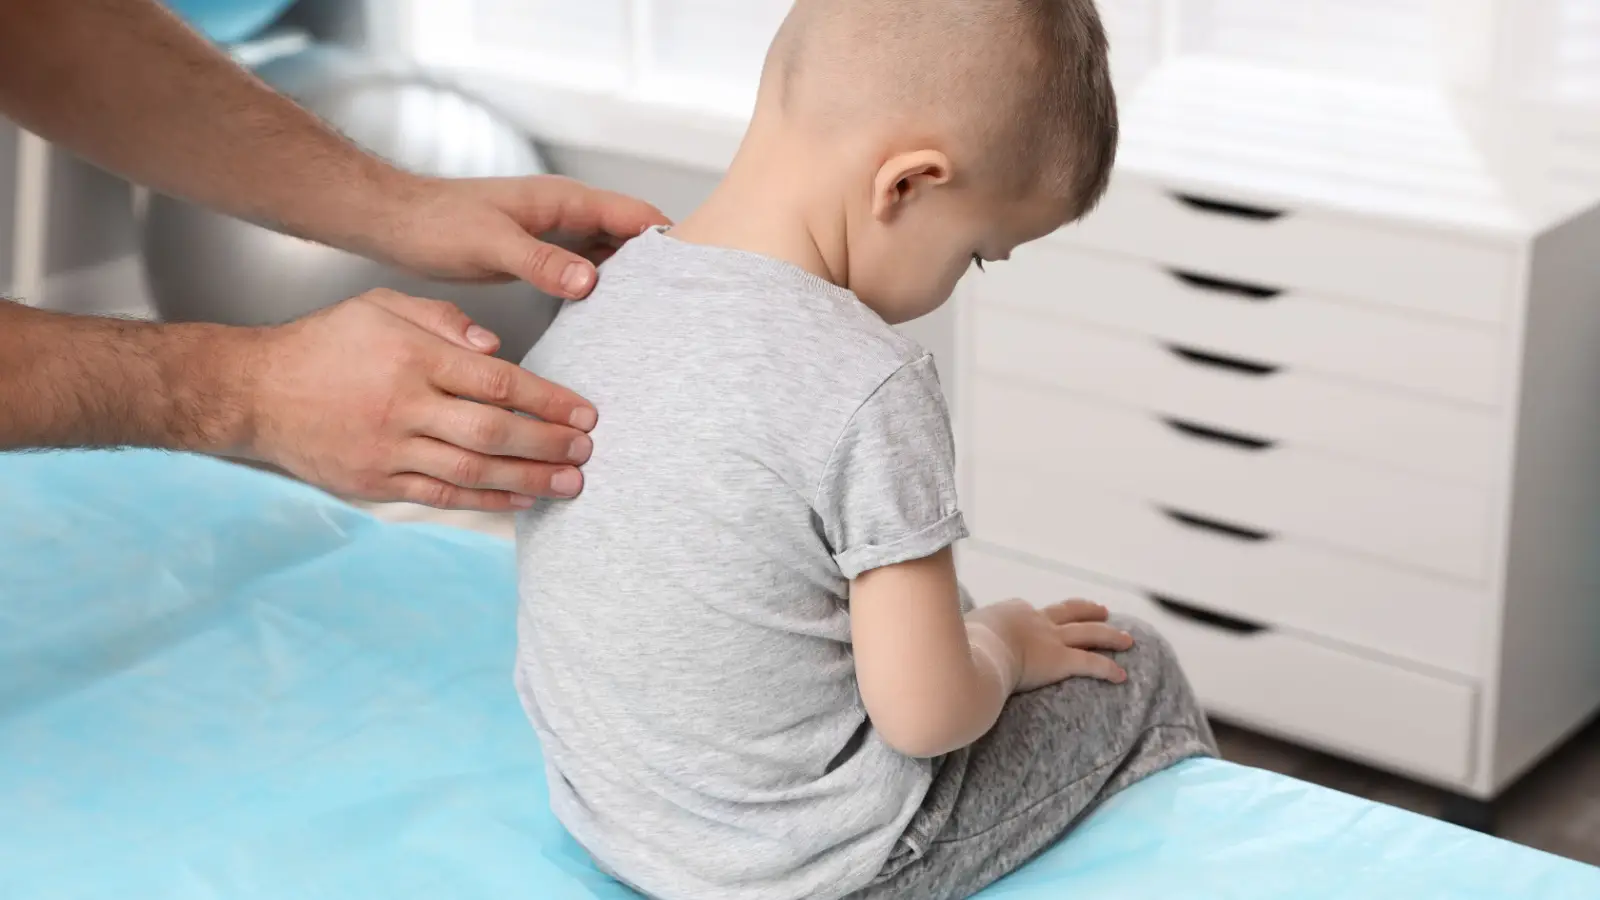 كيف يمكن علاج ضعف العضلات عند الأطفال بجلسات العلاج الطبيعي؟